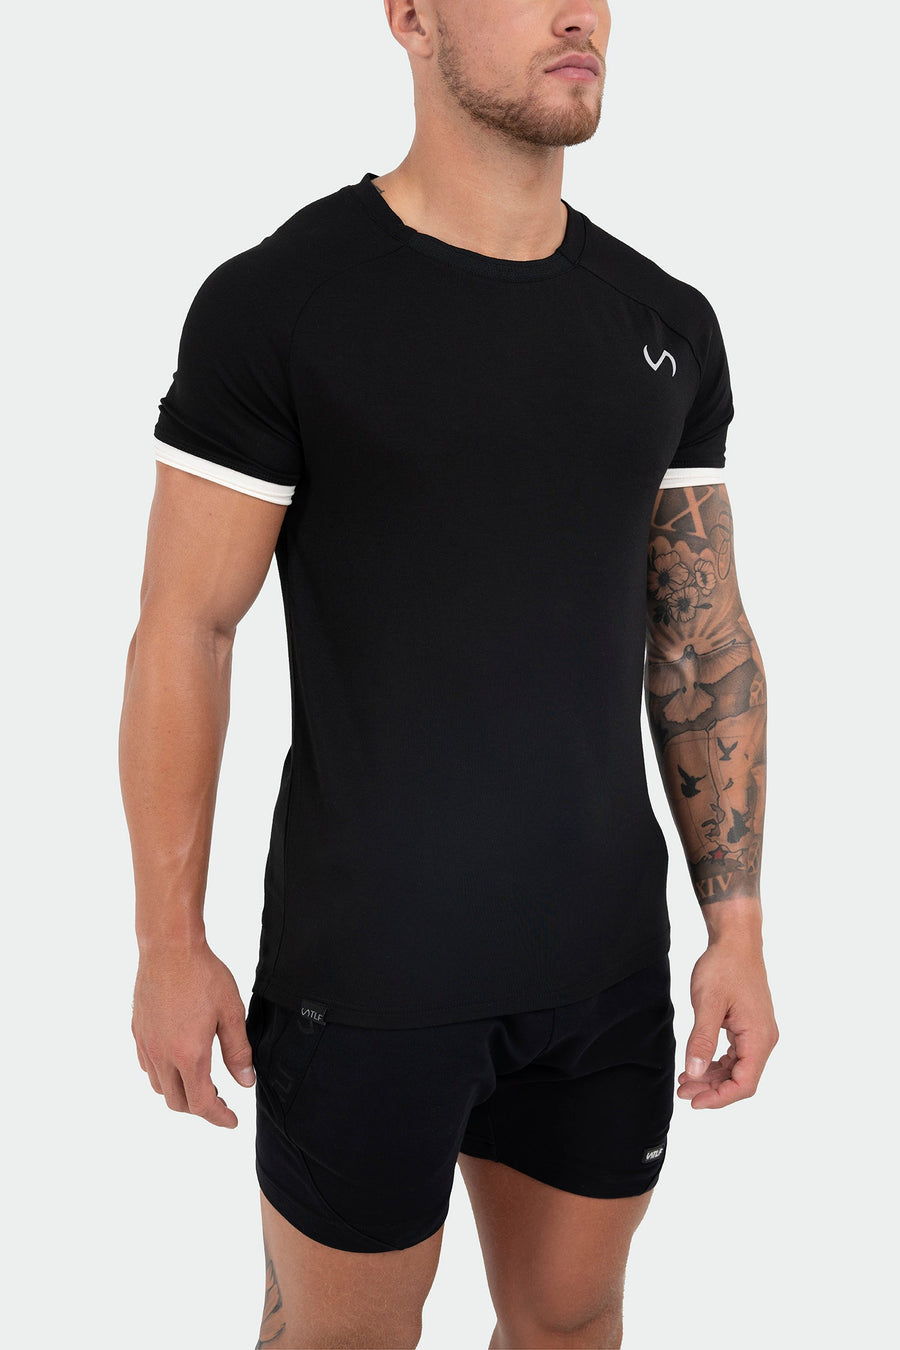 TLF Air-Flex Classic Tee - Men Modal Shirt - Black - 3